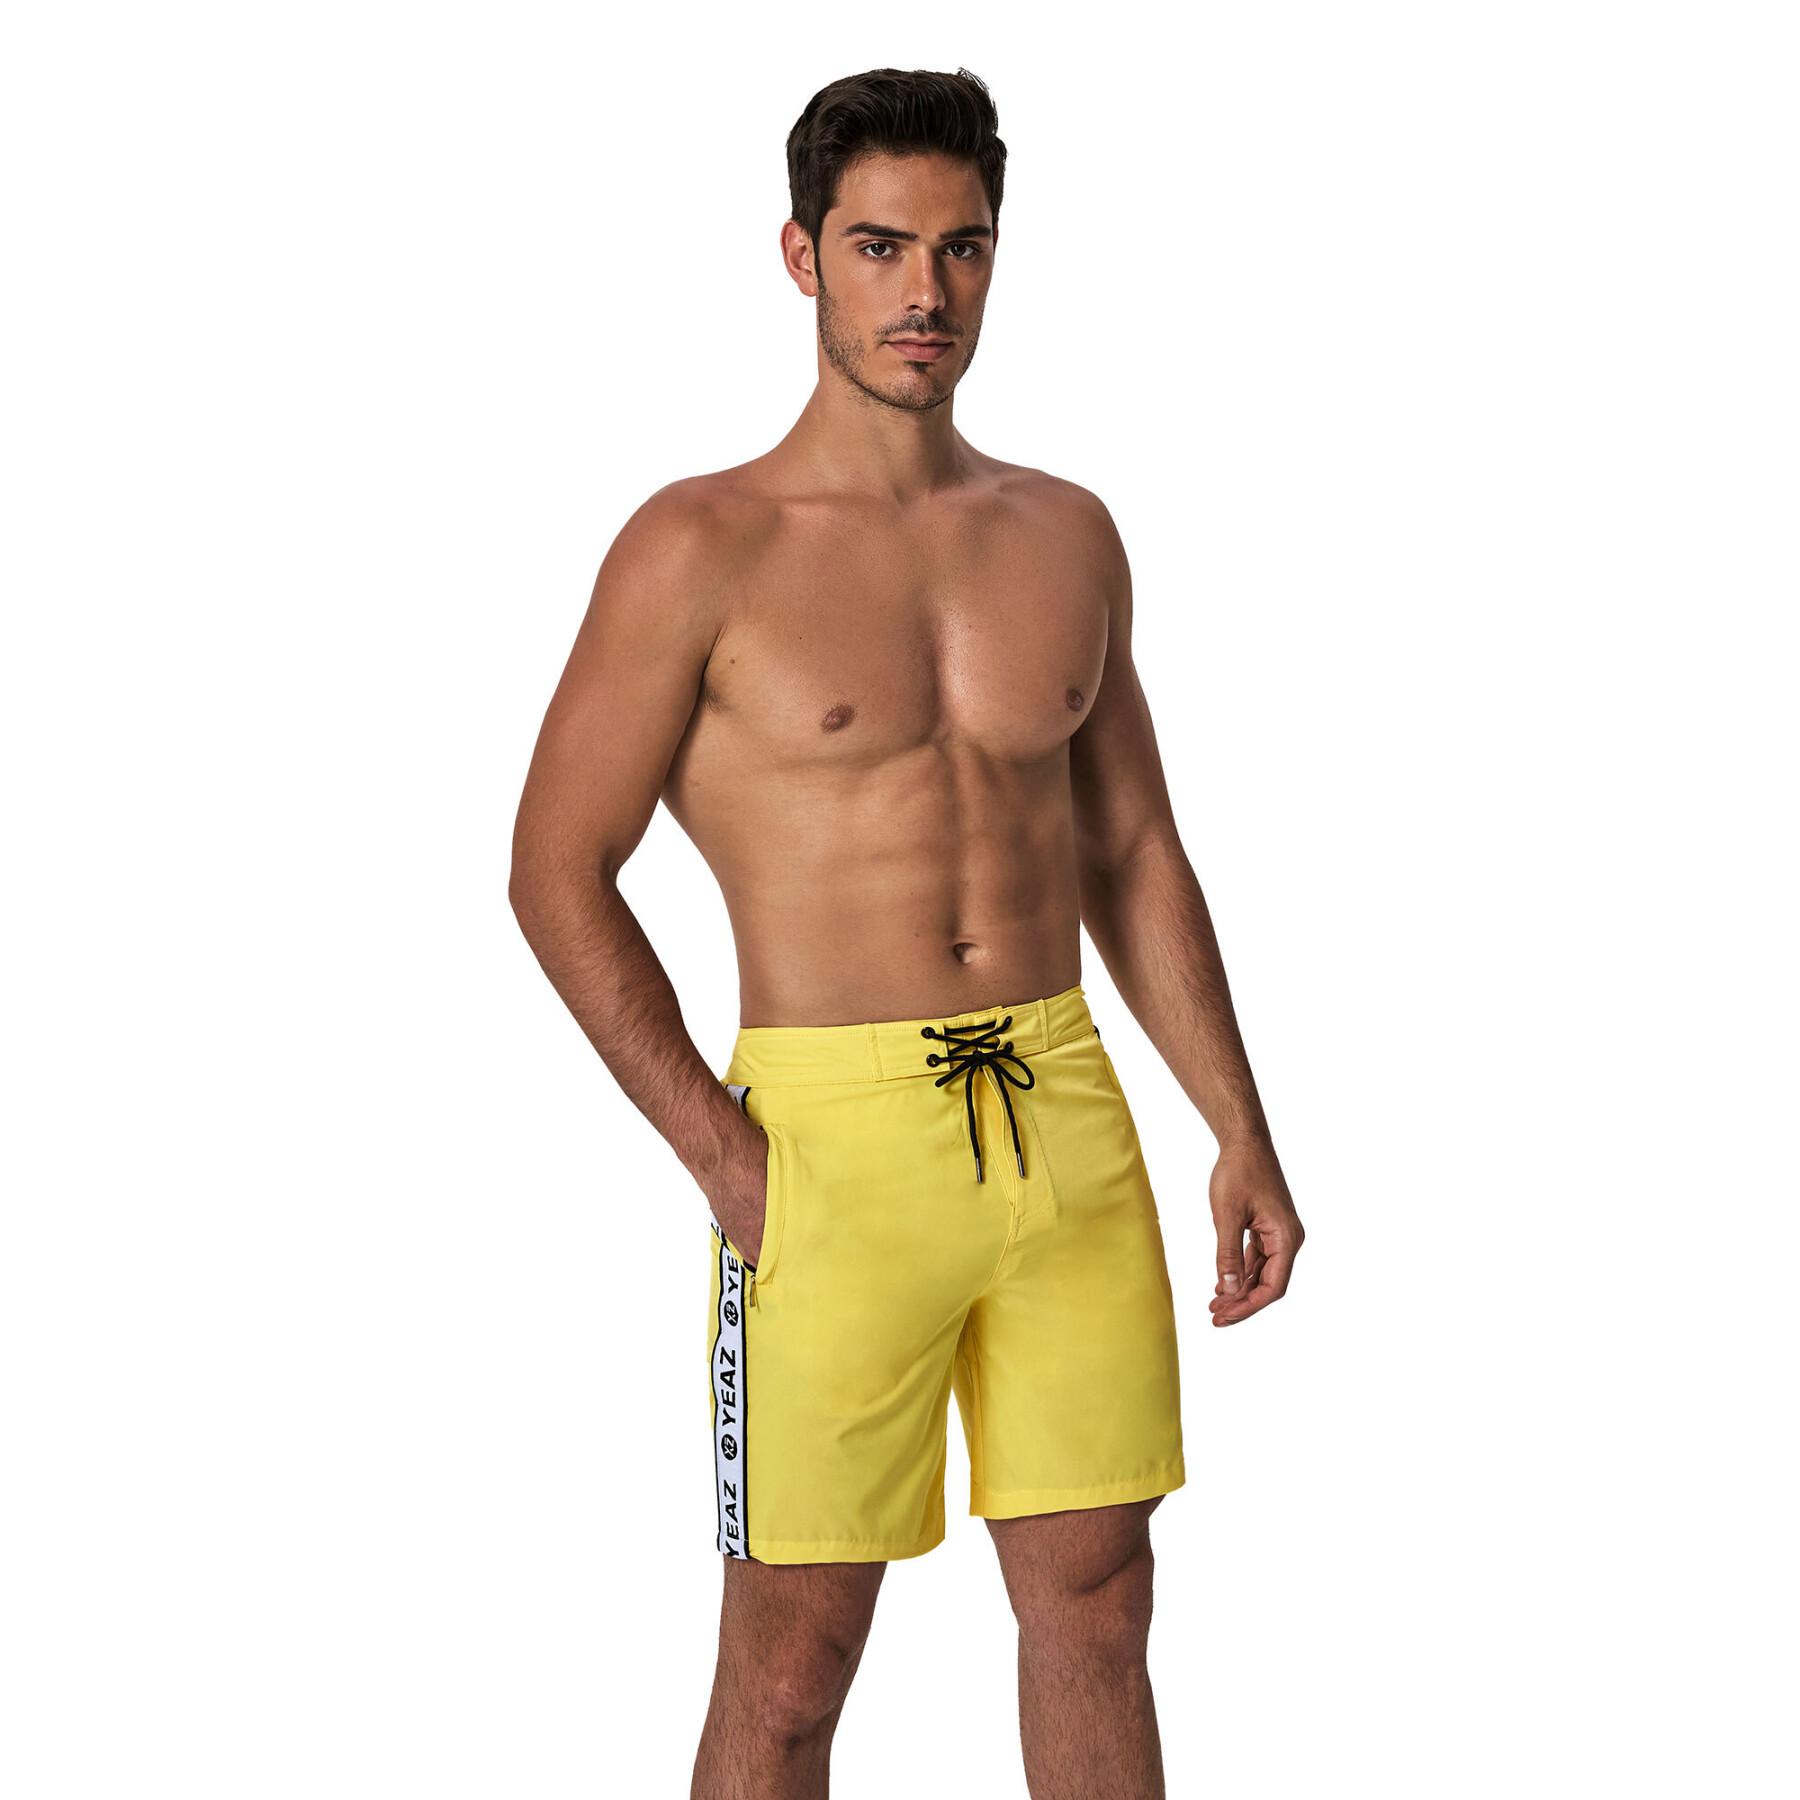 Swim shorts Yeaz Davey